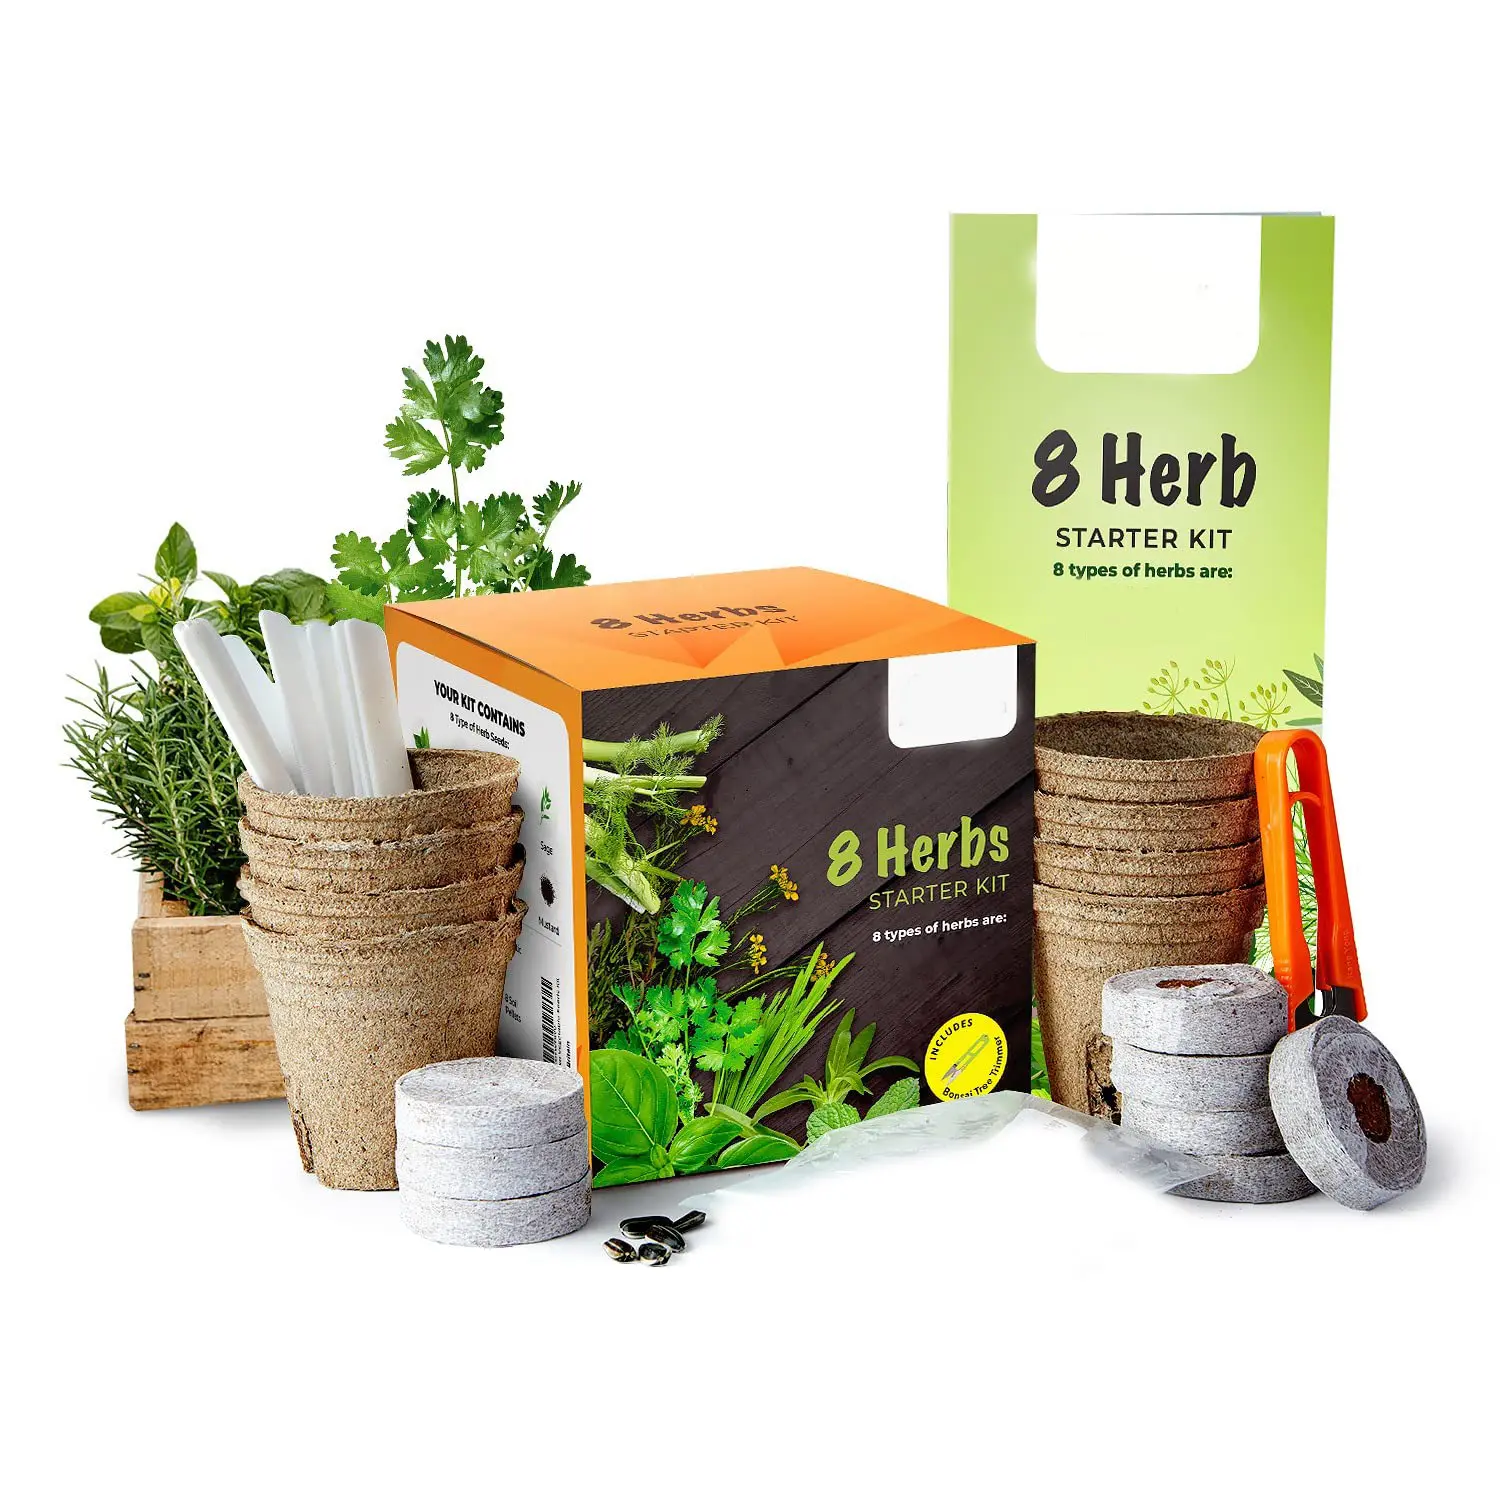 Pack de variétés d'herbes Propre kit de jardinage Cultivez facilement votre propre jardin d'herbes avec notre kit de démarrage complet pour les semis d'herbes pour débutants